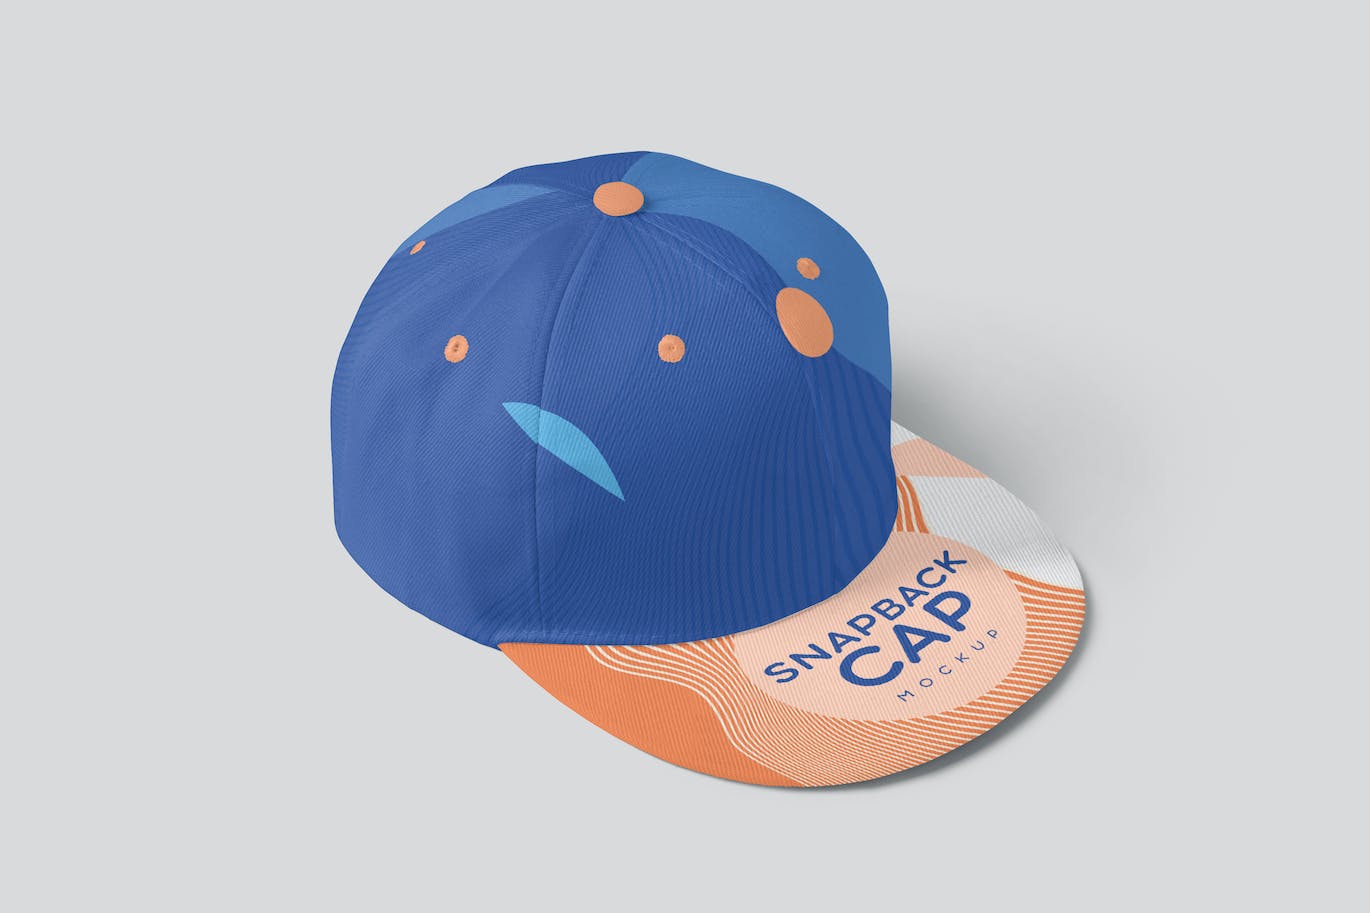 棒球帽运动品牌设计样机 Snapback Cap Mockups 样机素材 第2张